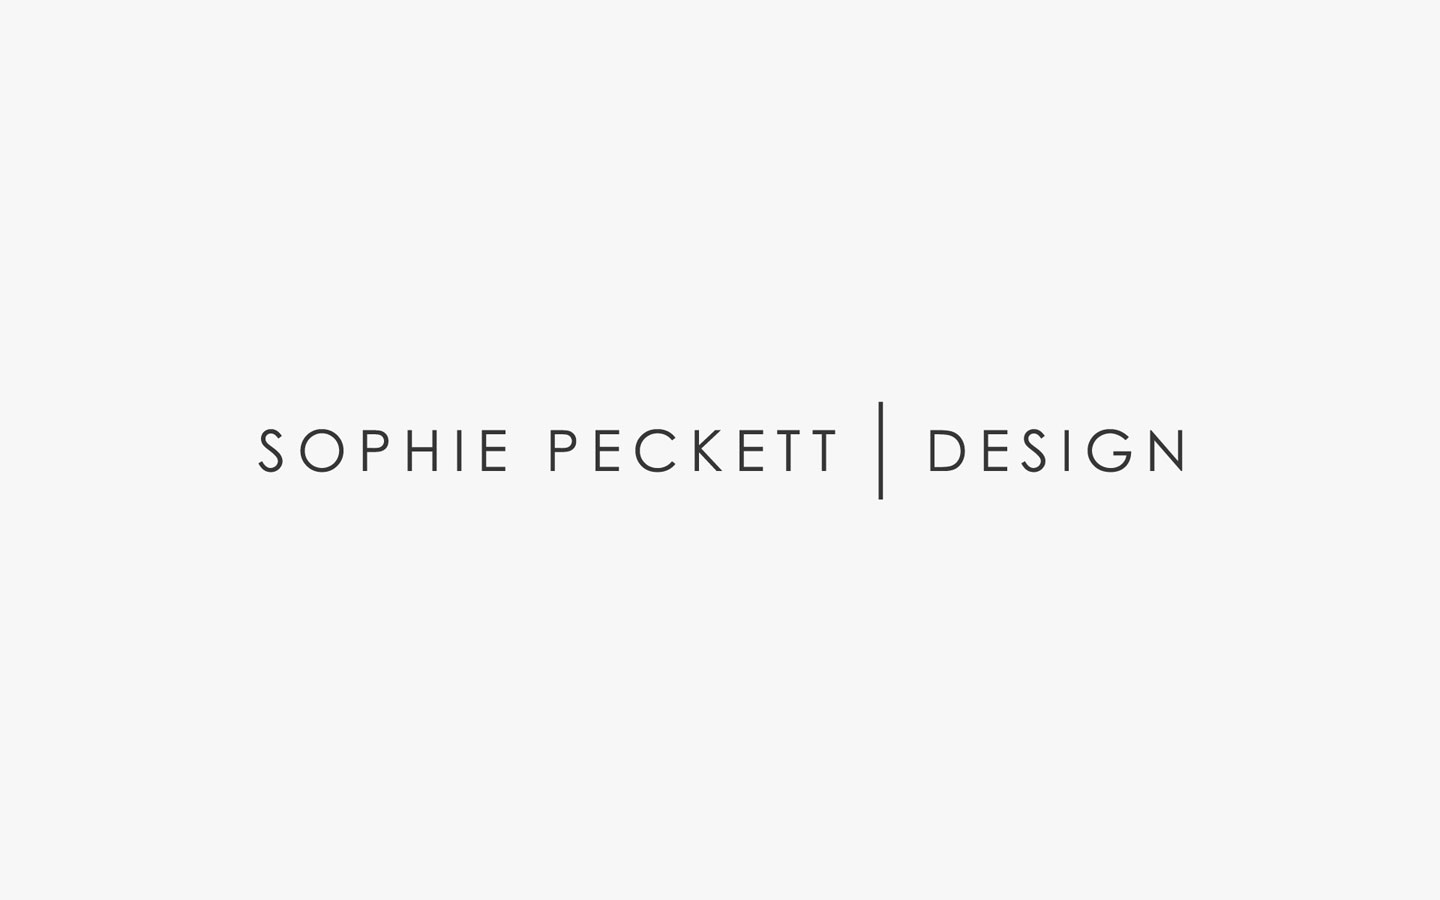 Sophie Peckett Logo Design in Mono